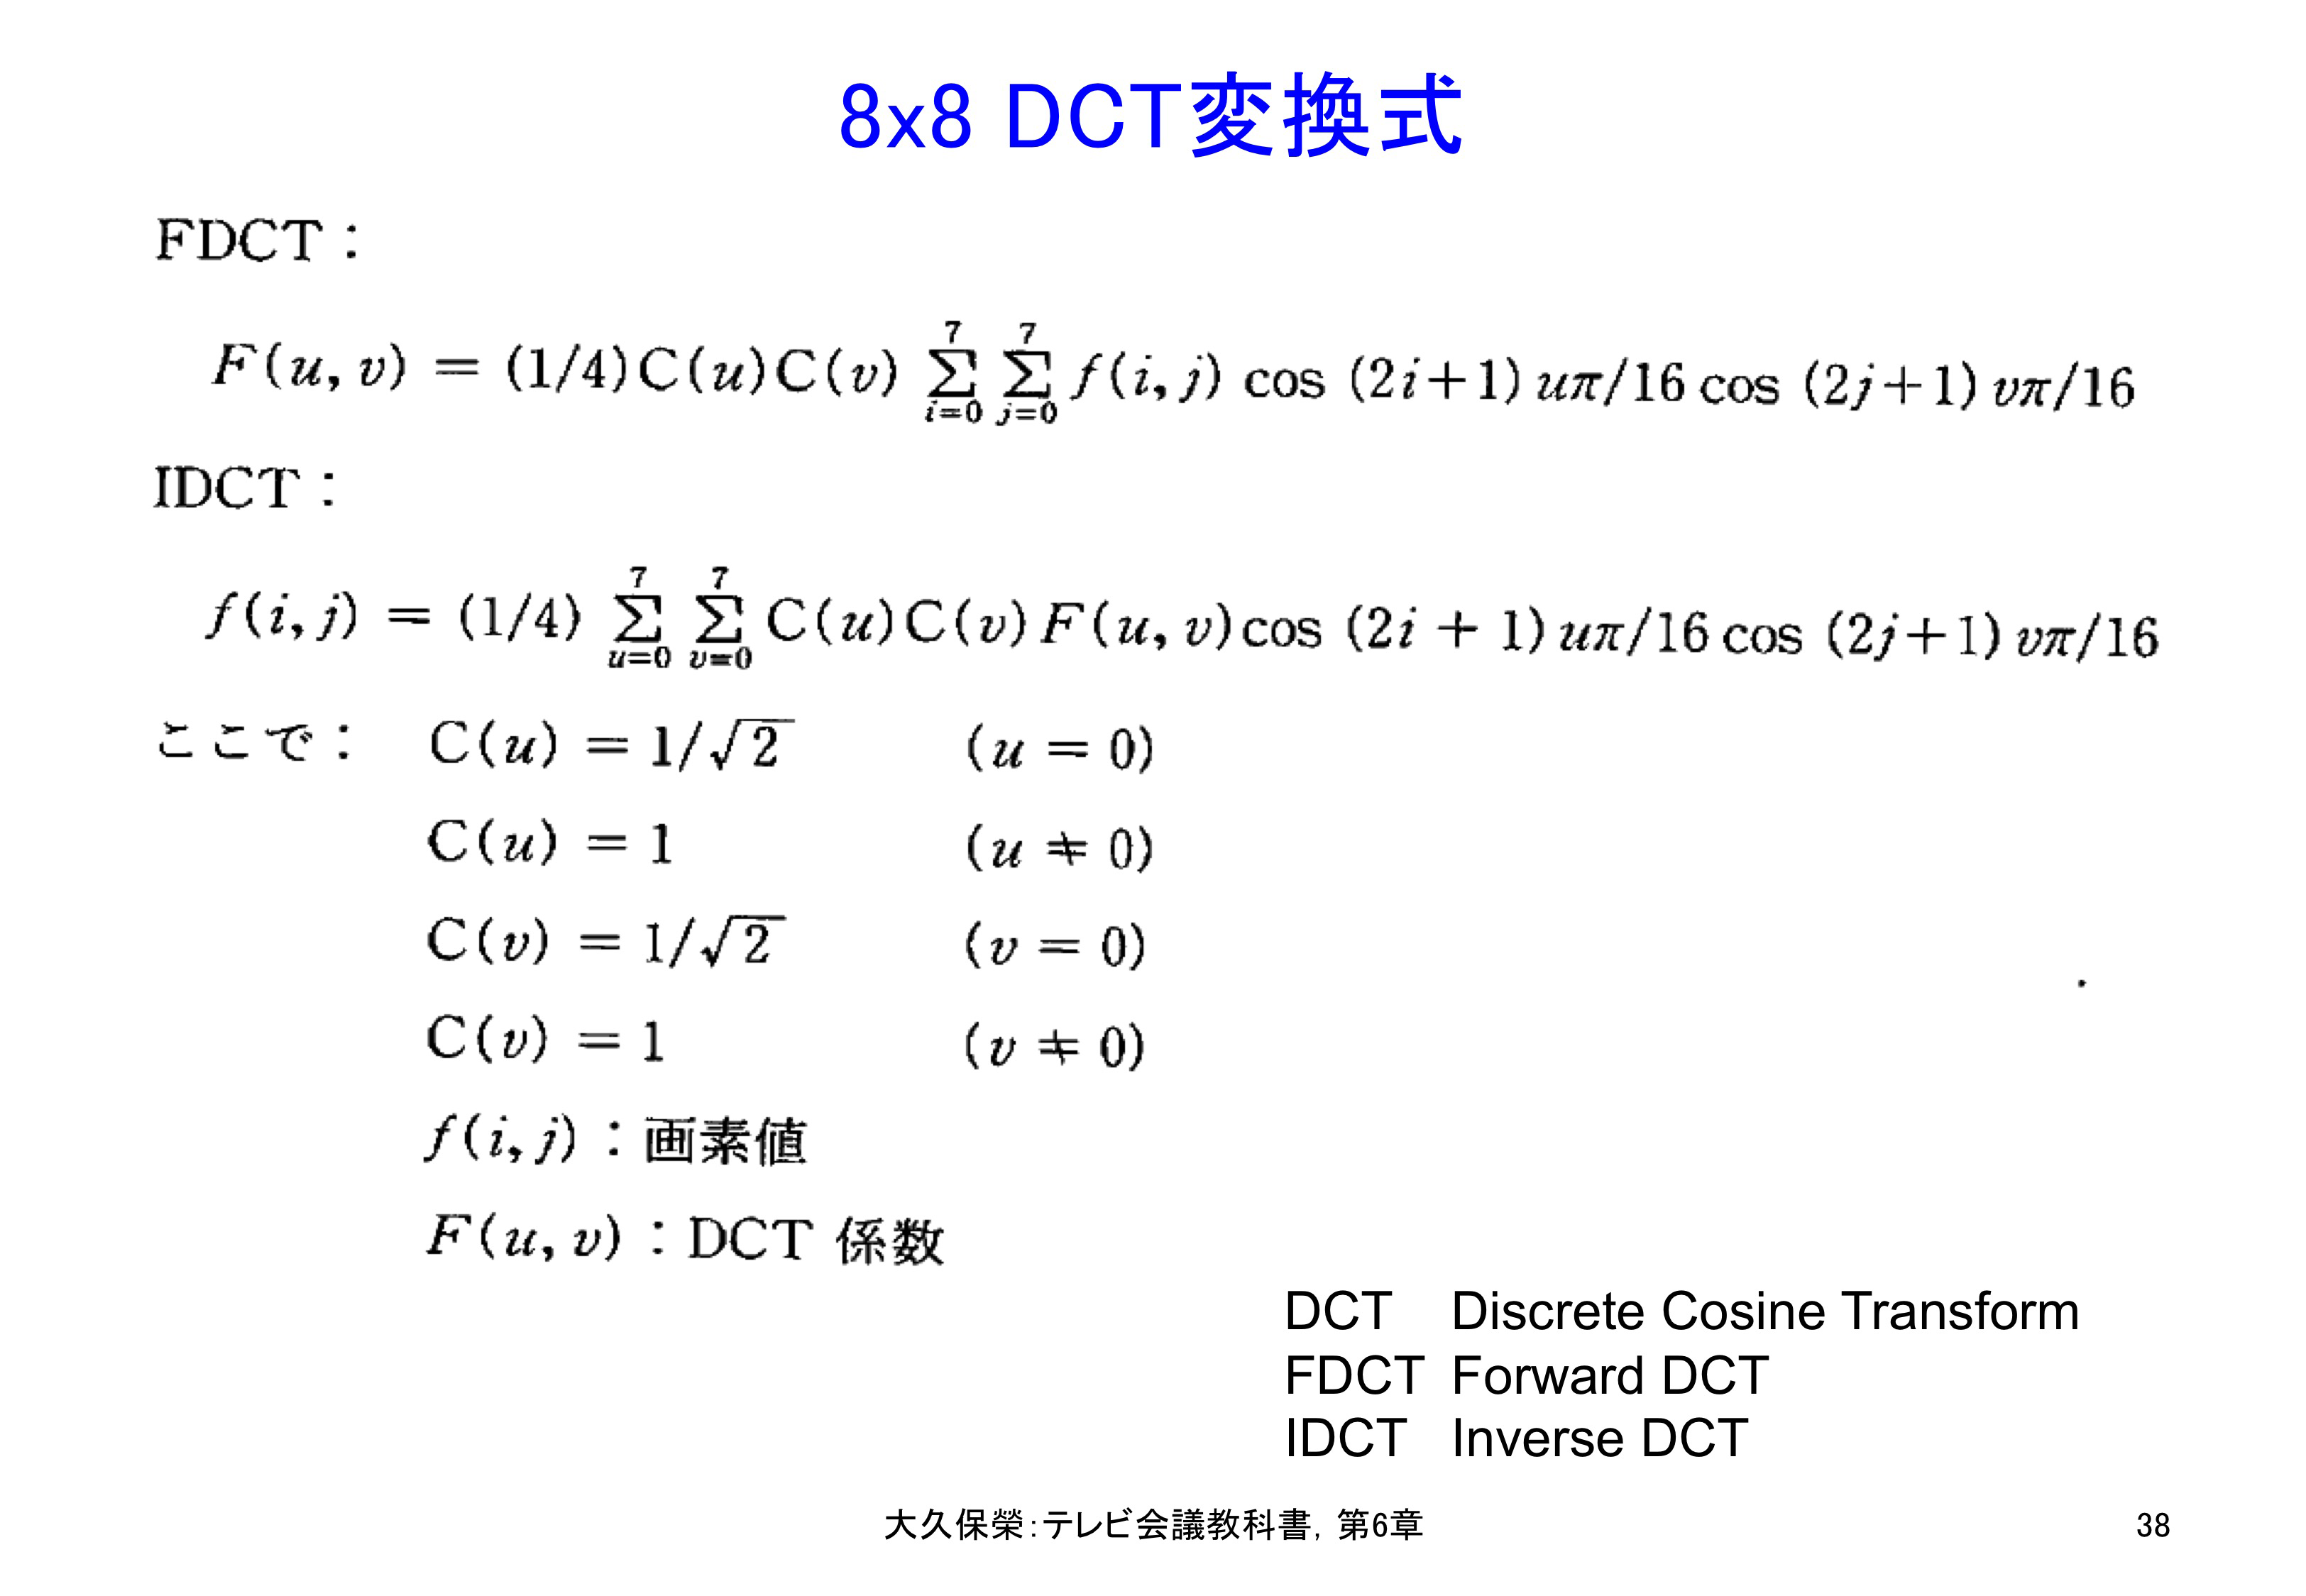 図6-38 8x8 DCT変換式